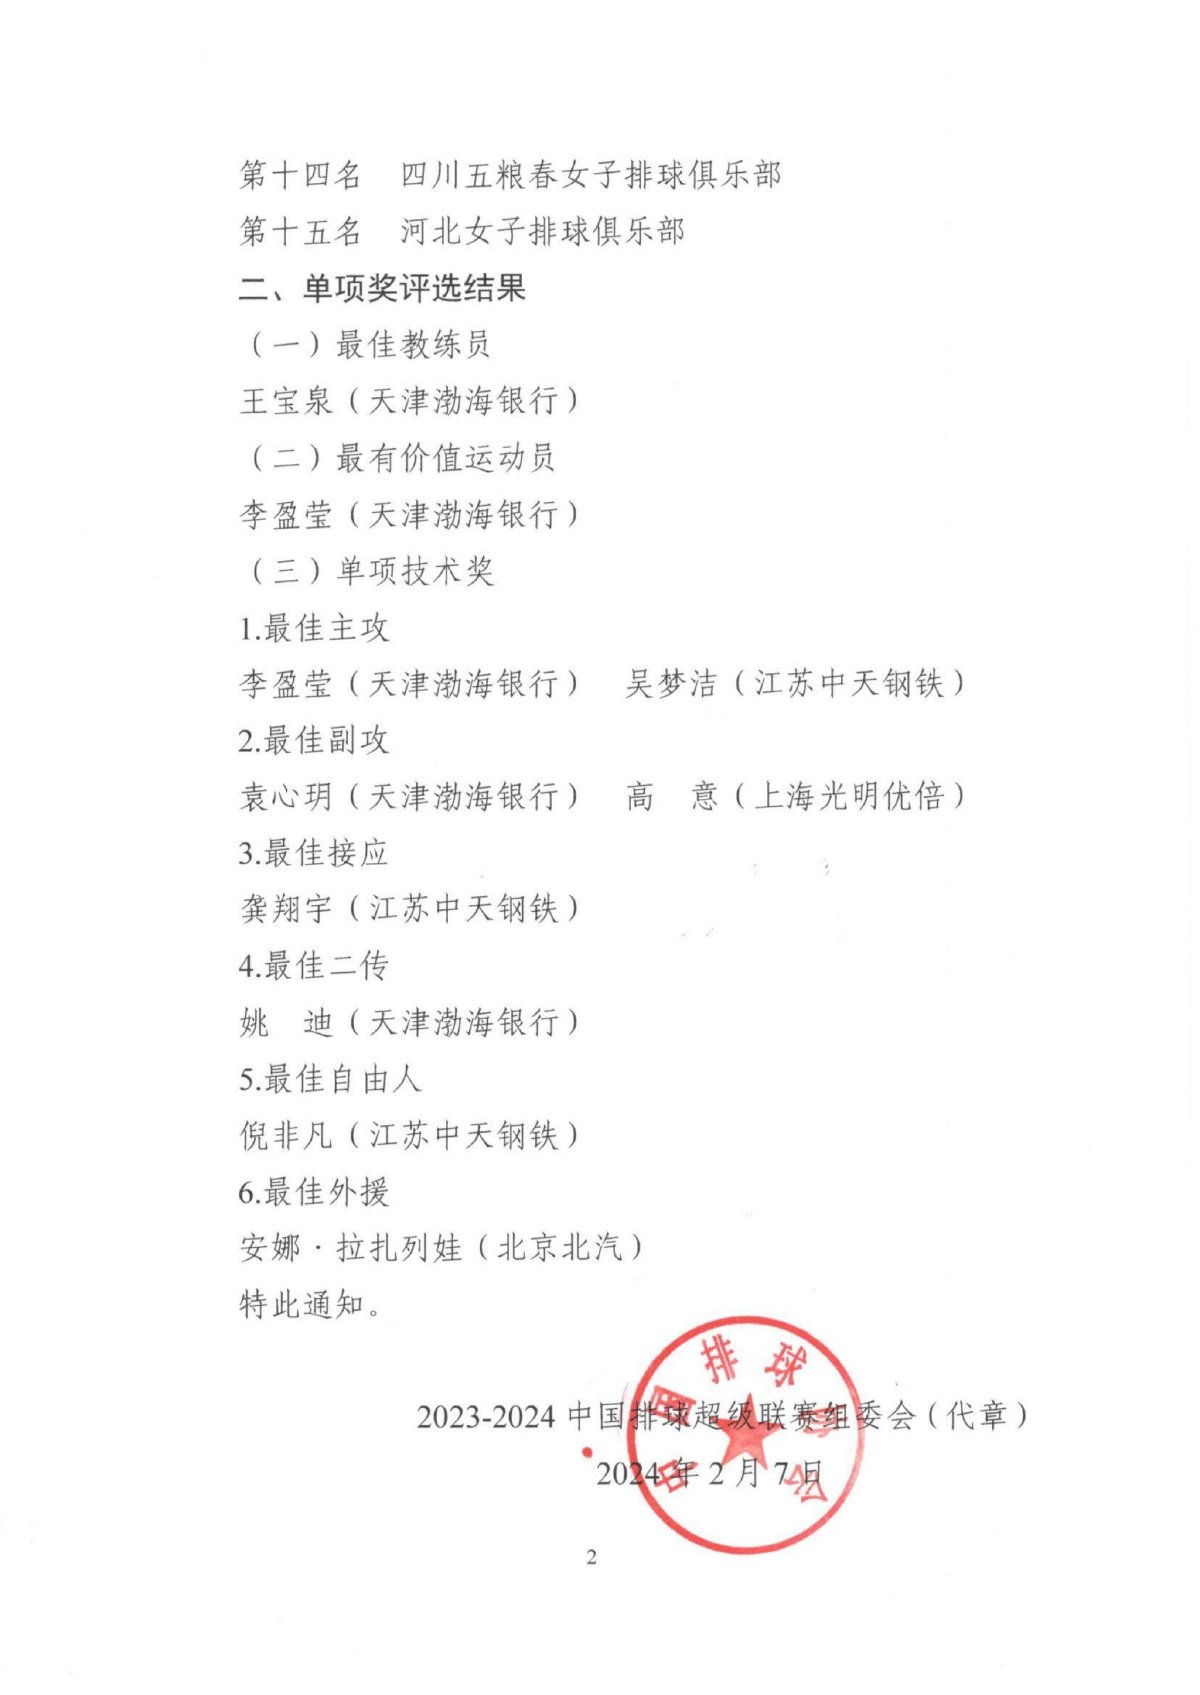 联赛组委会关于2023-2024中国女子排球超级联赛总成绩与单项奖评选结果的通知_01